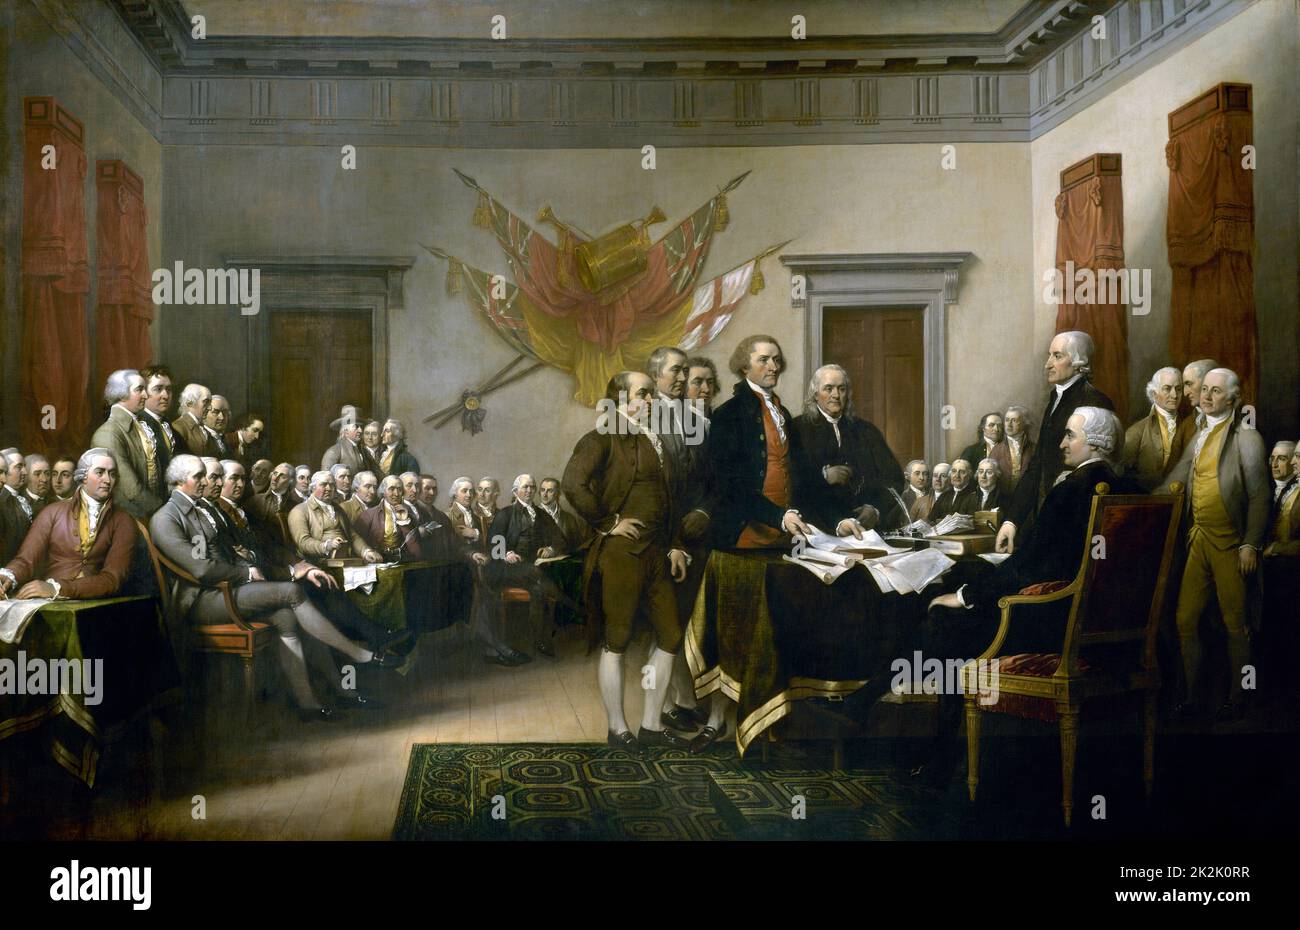 John Trumbull's Malerei, Erklärung der Unabhängigkeit, mit der Darstellung der 5-Mann des Ausschusses zur Ausarbeitung der Erklärung der Unabhängigkeit ihre Arbeit der Kongress. Die Malerei kann auf der Rückseite des US $ 2 Rechnung gefunden werden. Das Original hängt in der US Capitol Rotunde. Stockfoto